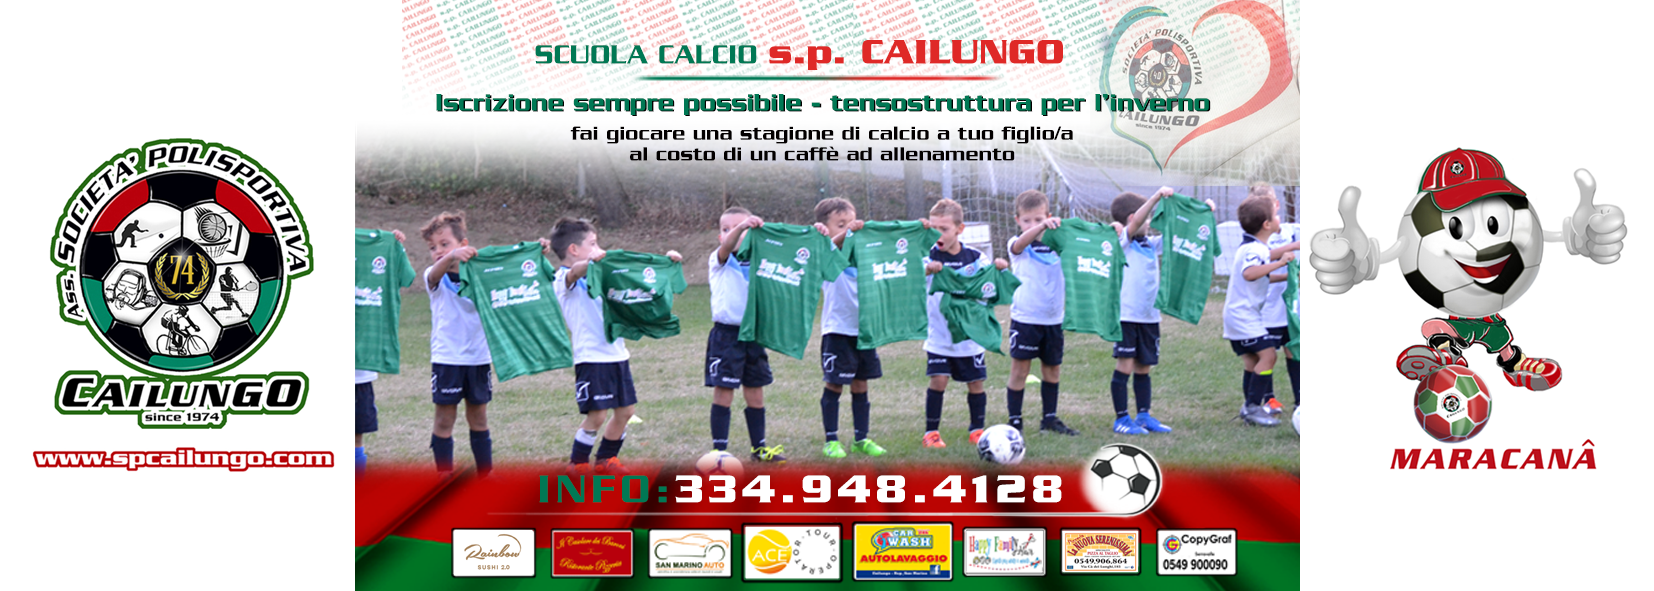 Scuola Calcio sp Cailungo 2020-21